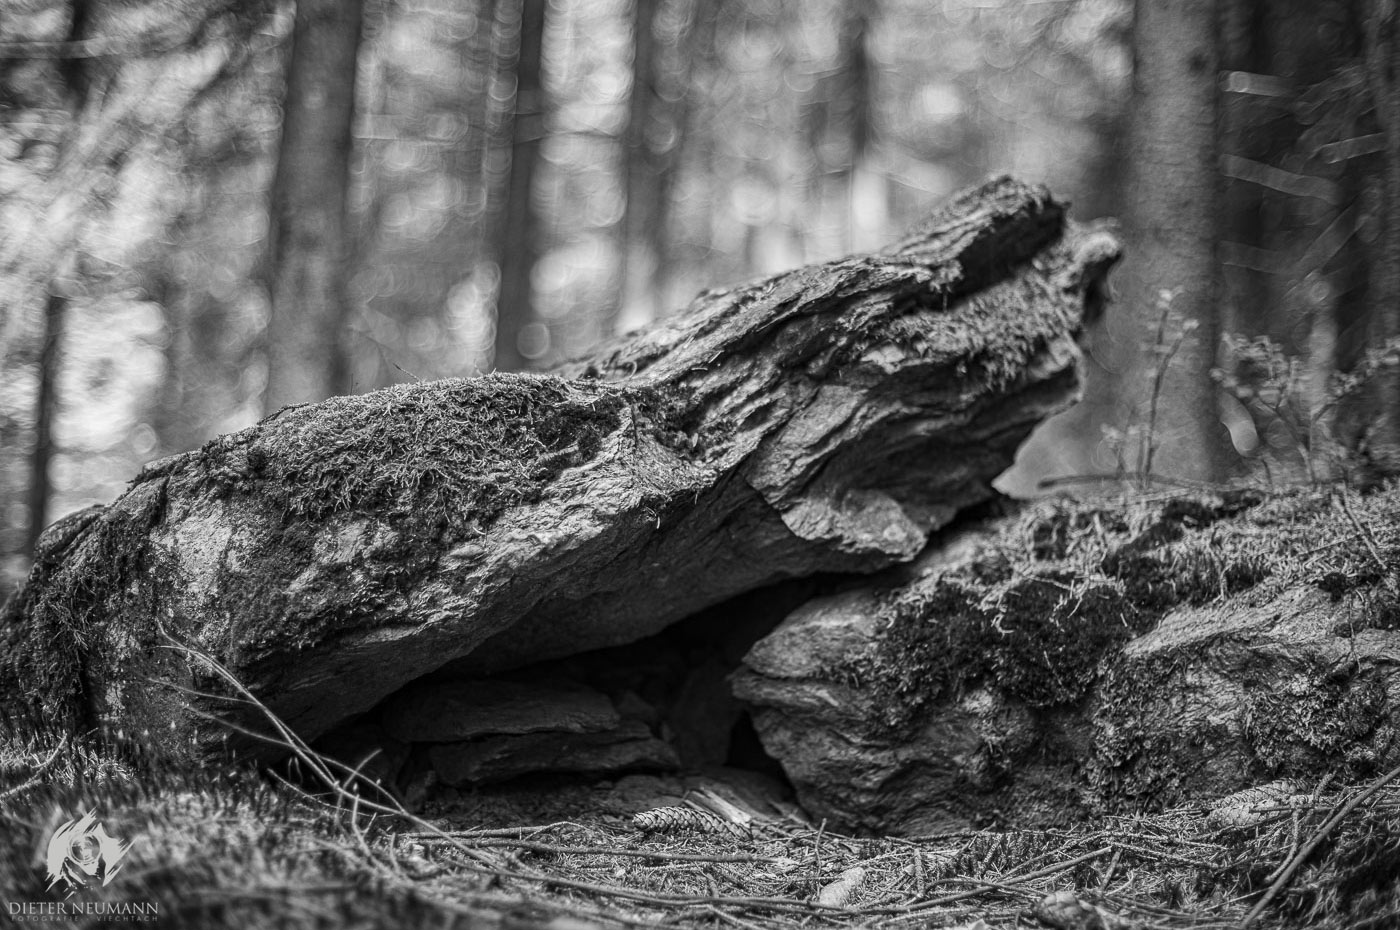 Manuelle Lichtmalerei in der Natur ... bei Blende 1.4 in schwarz-weiß. - Nikon Z7 - Zeiss Planar 50mm f1.4 | © dieter-neumann-fotografie.de